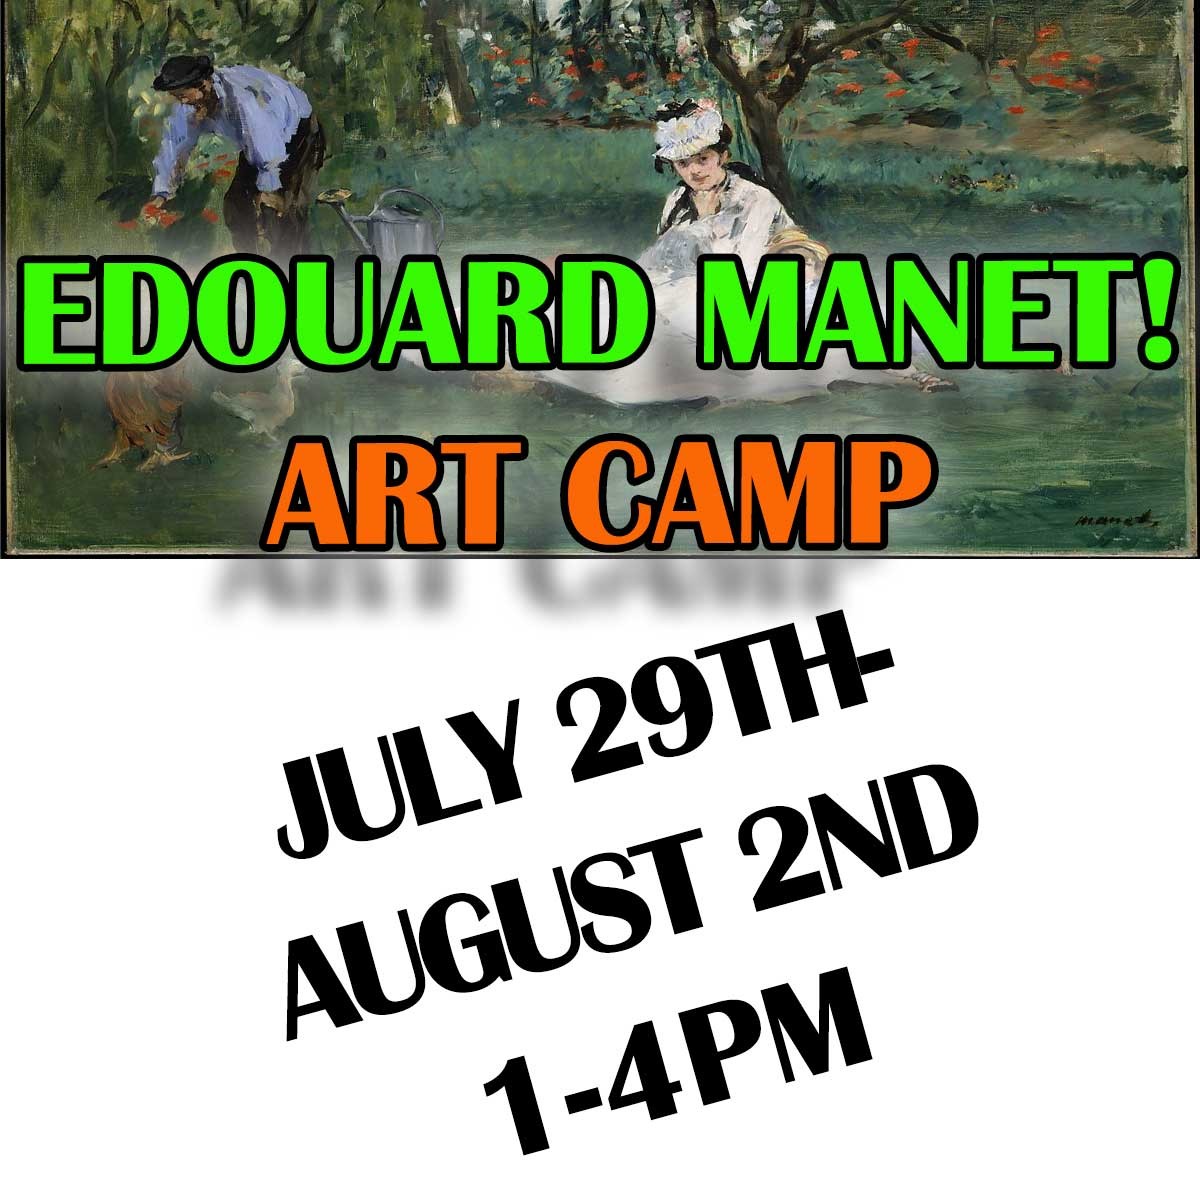 Make A Splash With Manet! Summer Art Camp!